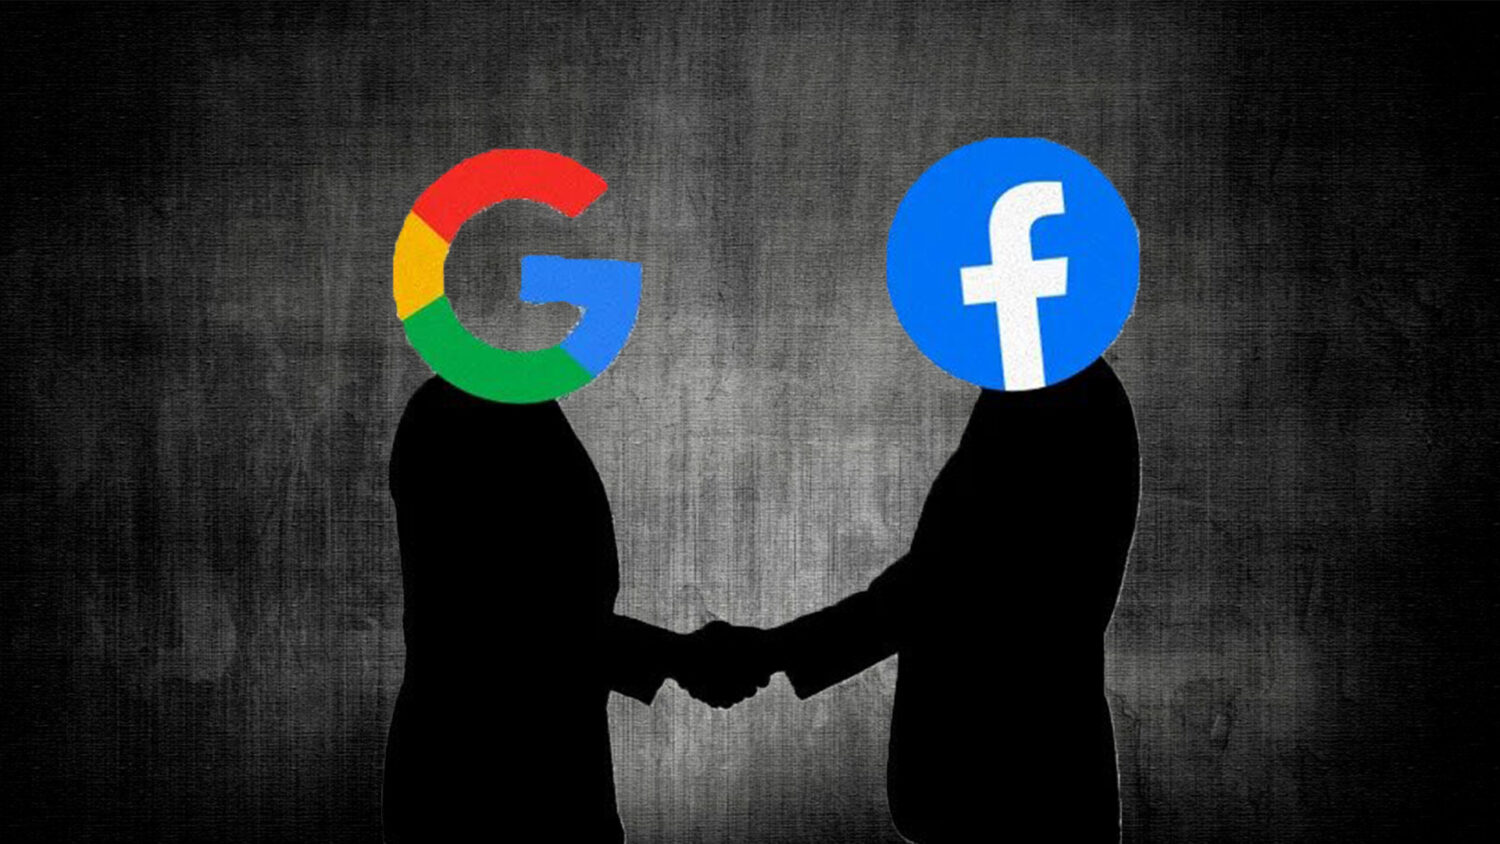 Βρυξέλλες και Λονδίνο ξεκίνησαν έρευνα για τη συμφωνία Google-Facebook